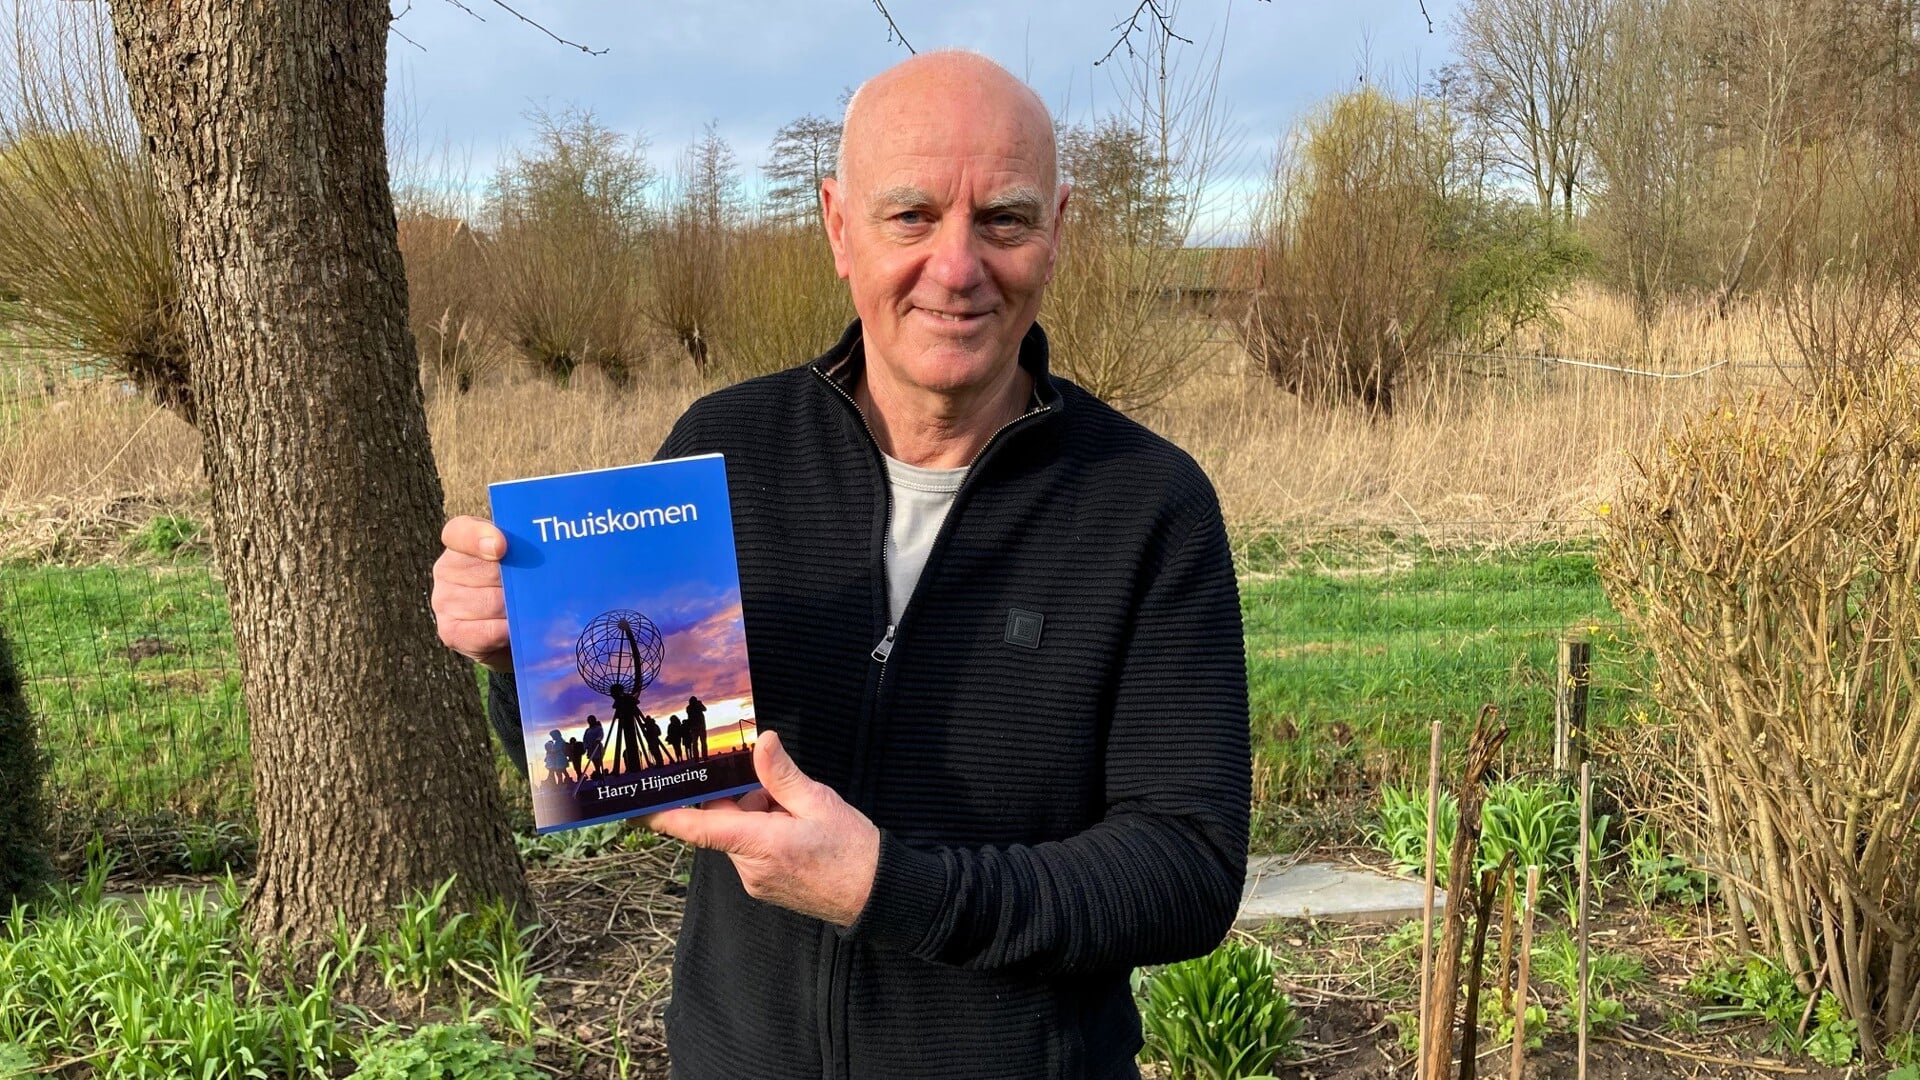 • Harry Hijmering (68 jaar) uit Giessen met zijn boek 'Thuiskomen'.